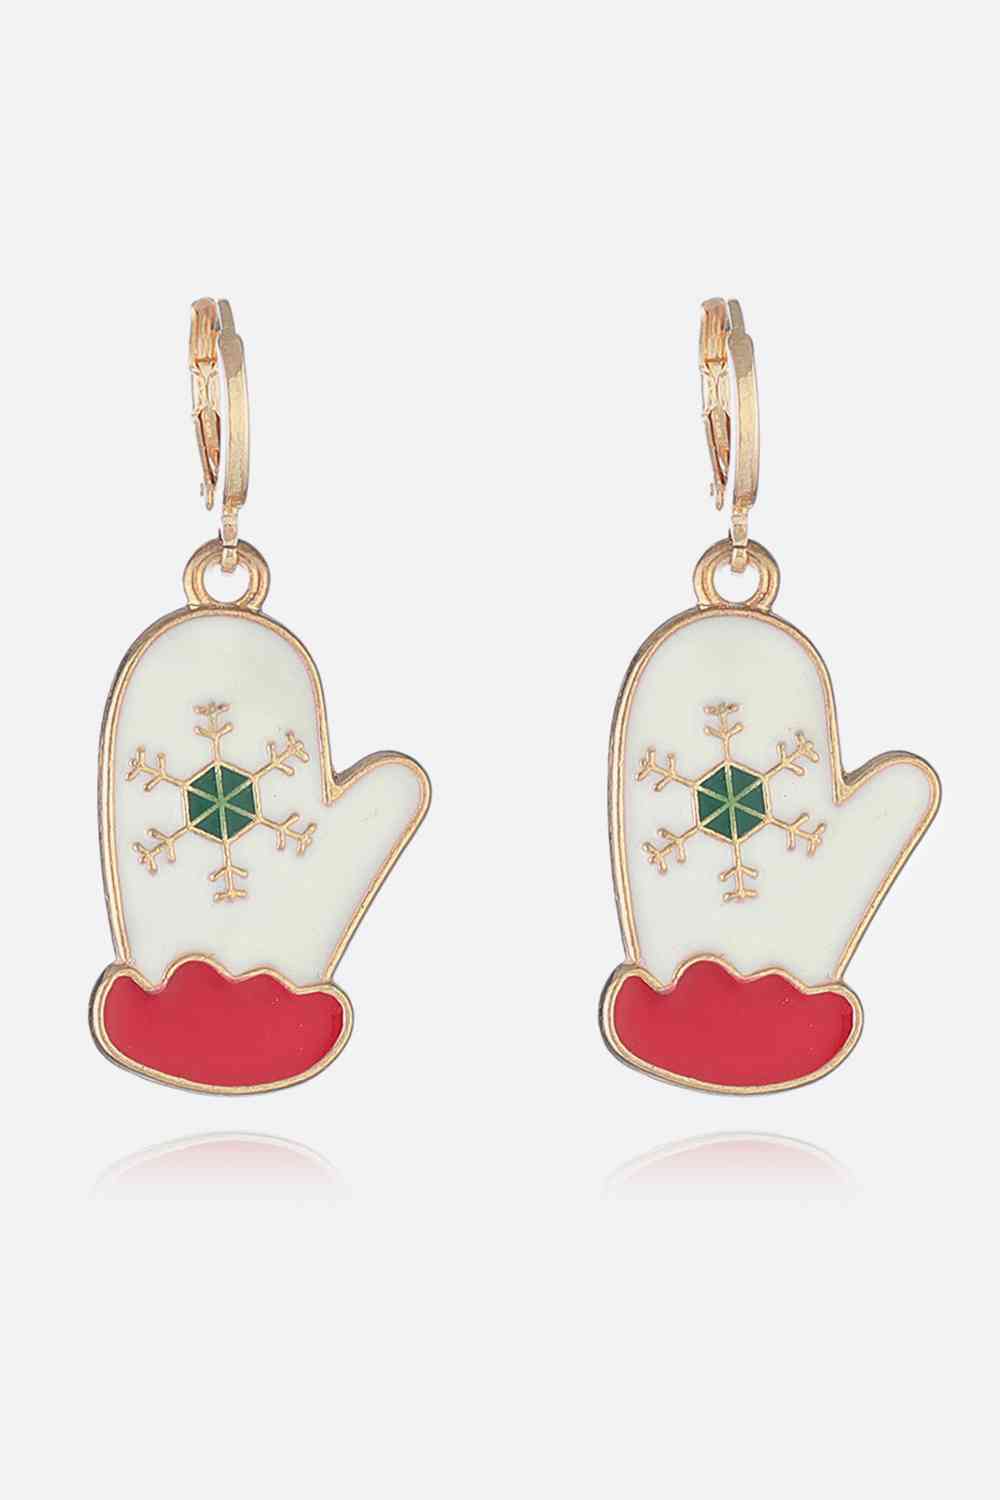 Christmas Theme Alloy Earrings - Style B / One Size - Women’s Jewelry - Earrings - 20 - 2024